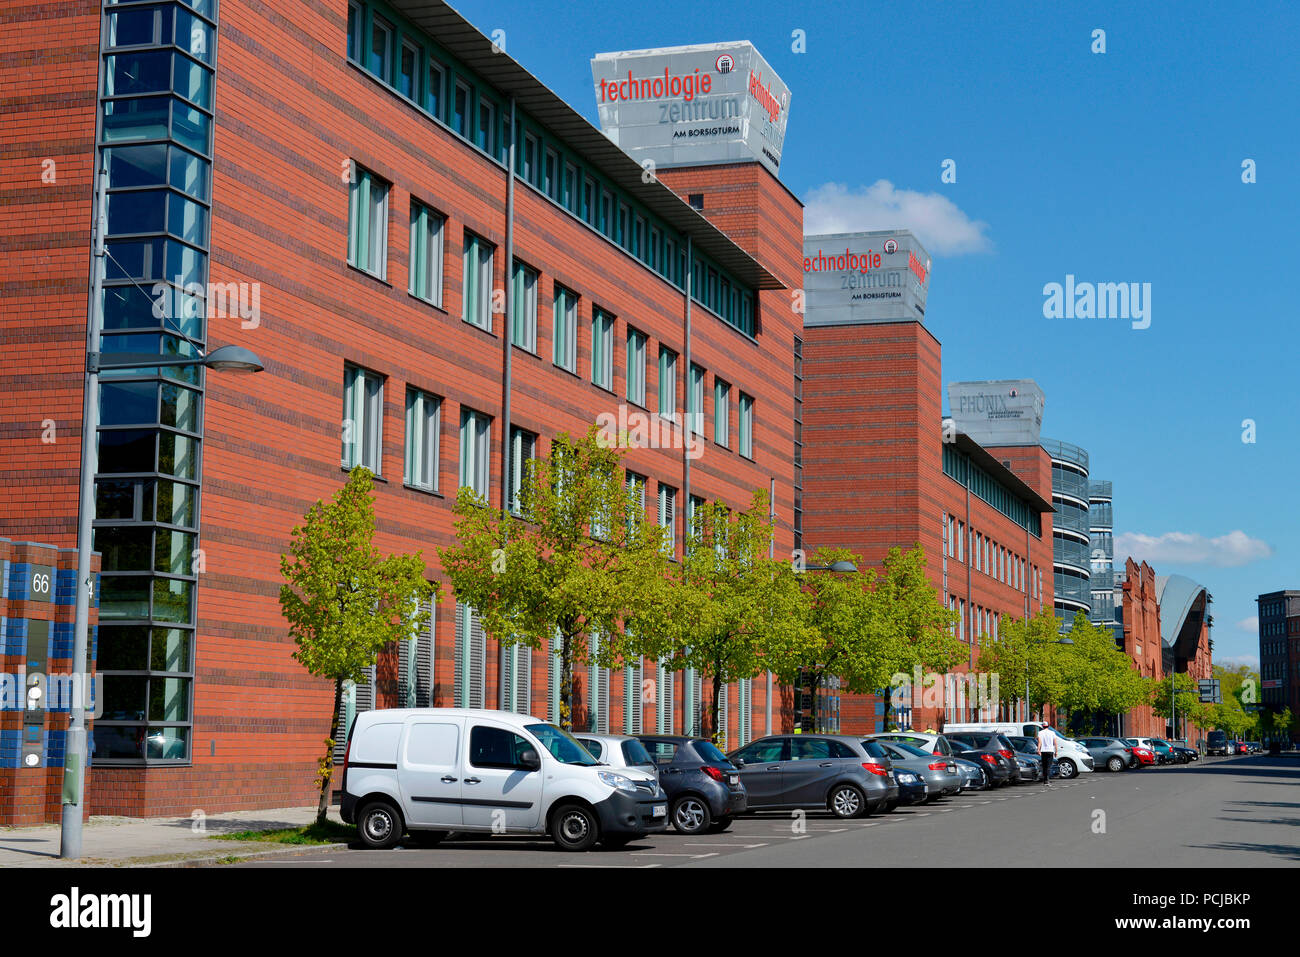 Technologie-Zentrum am Borsigturm, Tegel, Reinickendorf, Berlin, Deutschland Stock Photo